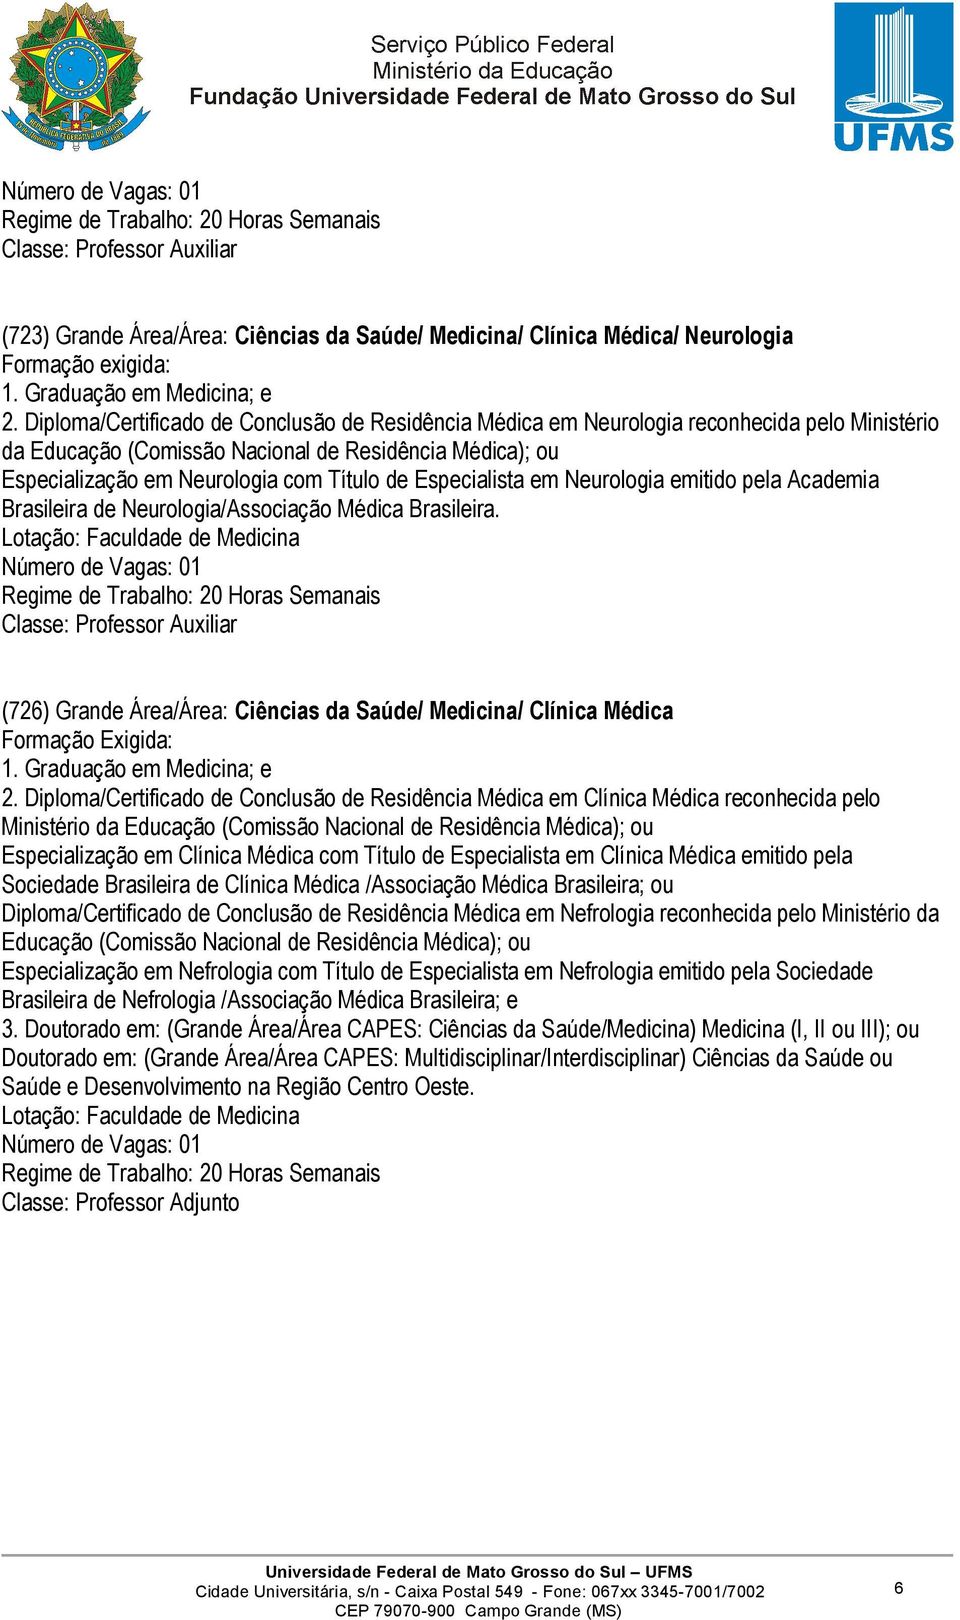 Especialista em Neurologia emitido pela Academia Brasileira de Neurologia/Associação Médica Brasileira.